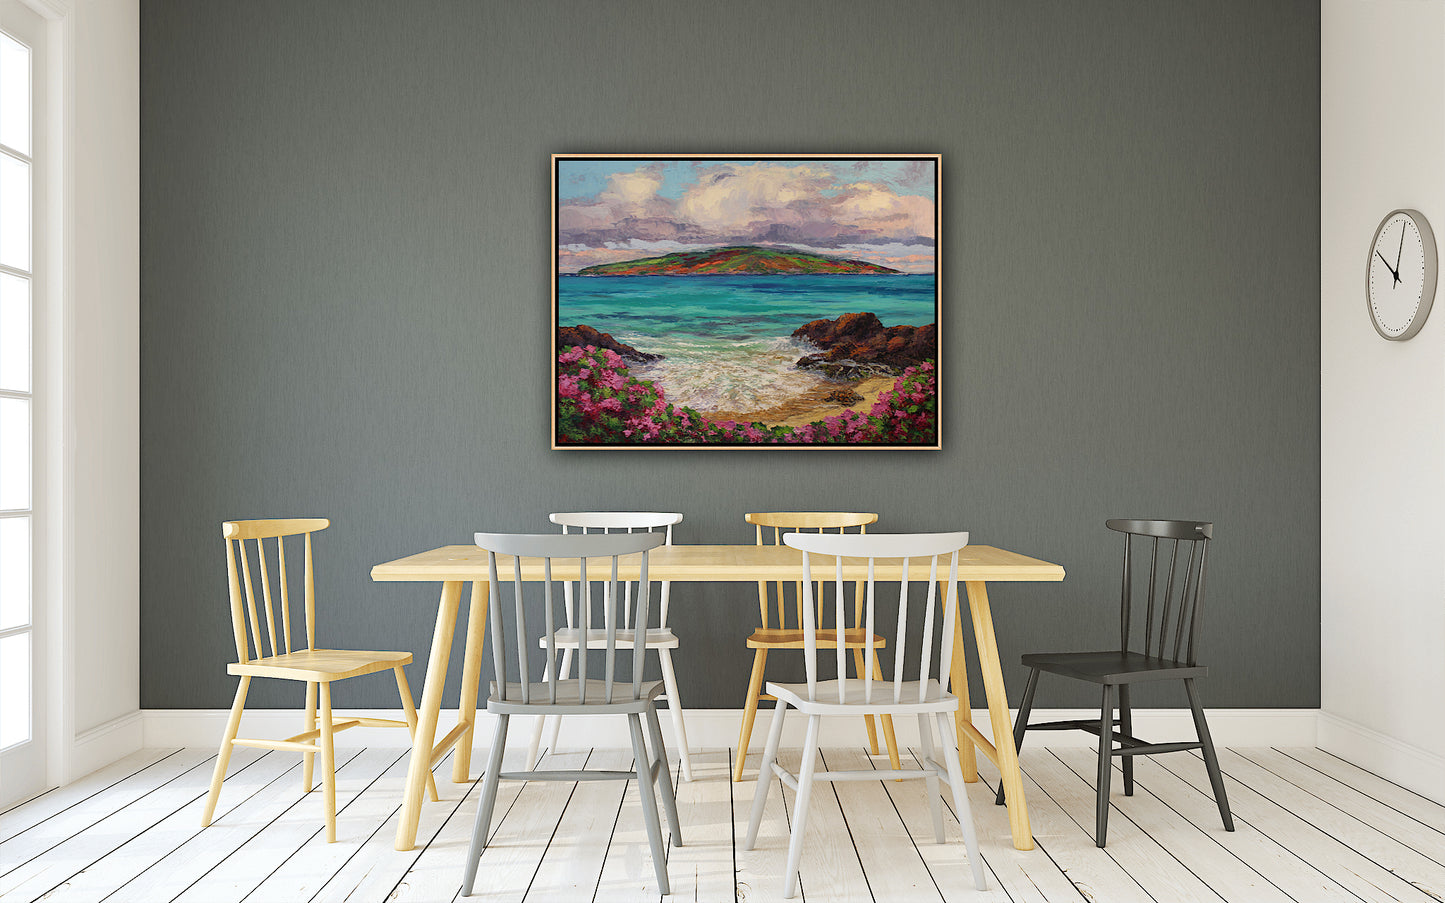 Turtle Beach Maui, An Original 30" x 40" Hawaiian Seascape Oil Painting On Canvas